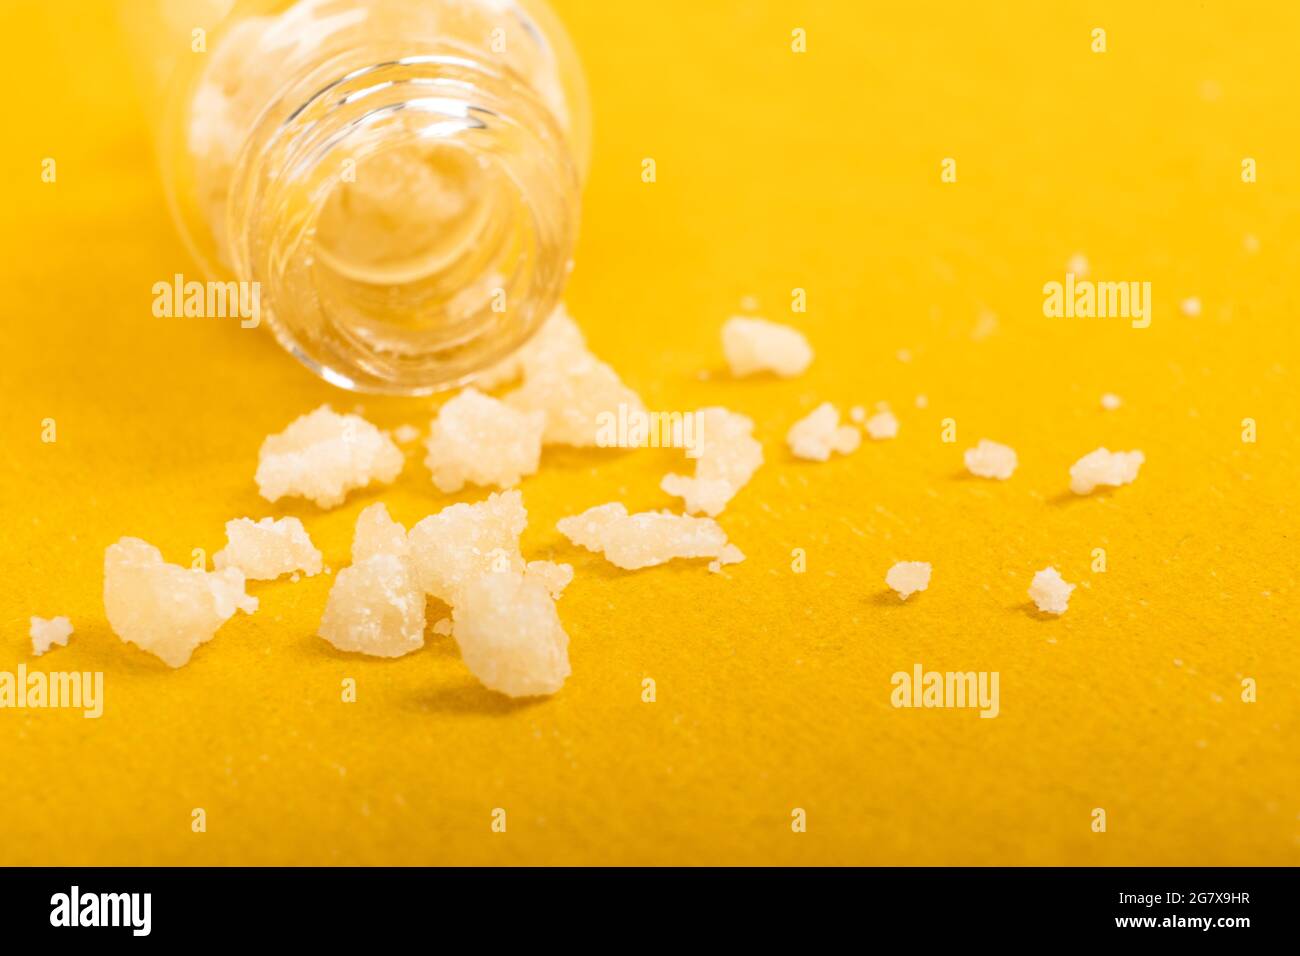 Cristallo di cocaina immagini e fotografie stock ad alta risoluzione - Alamy